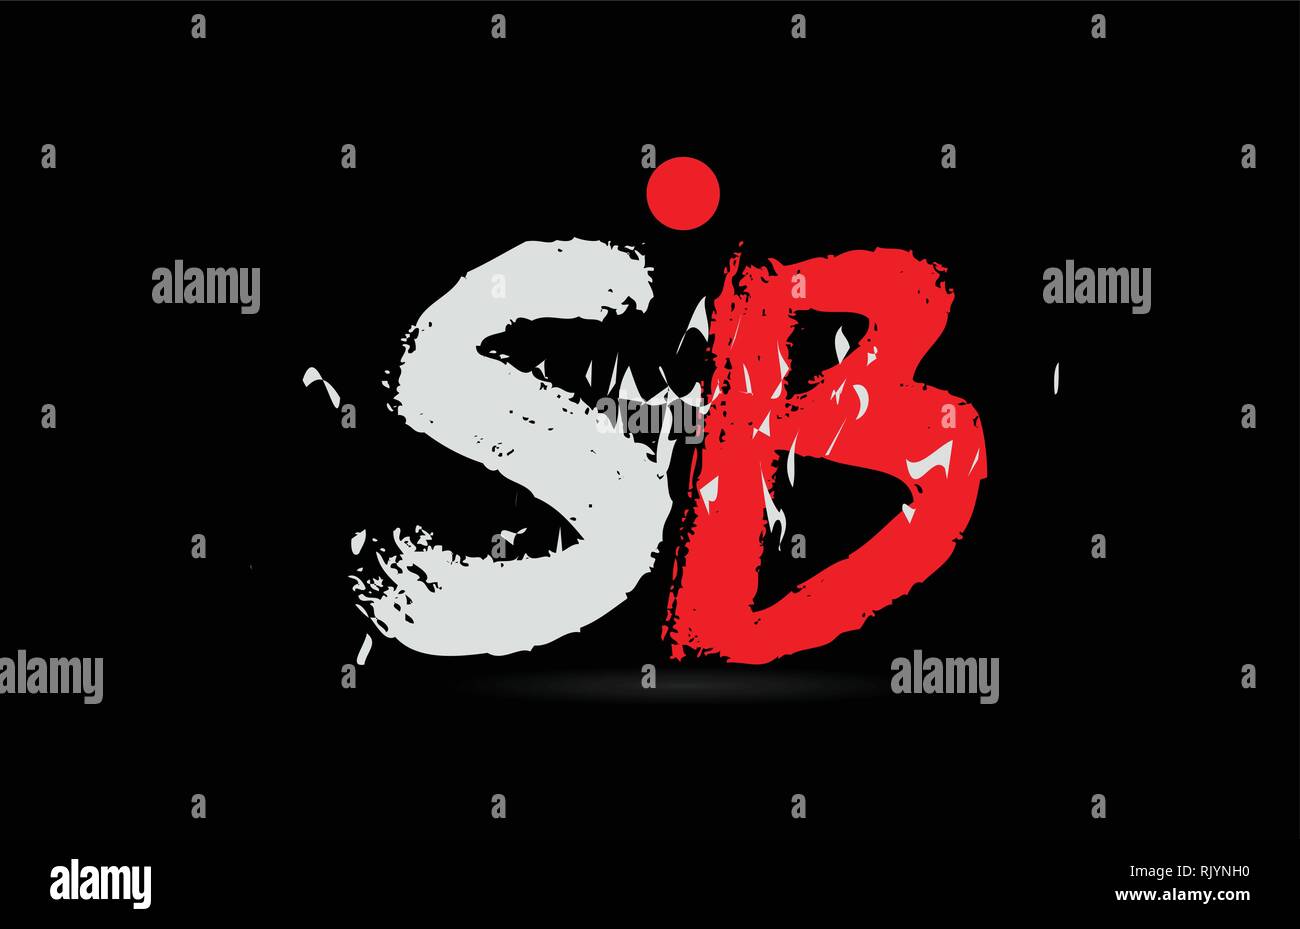 Design von Buchstaben Kombination SB S B auf schwarzen Hintergrund mit grunge Textur und weiß rote Farbe, das als Logo taugt, für ein Unternehmen oder ein Geschäft Stock Vektor